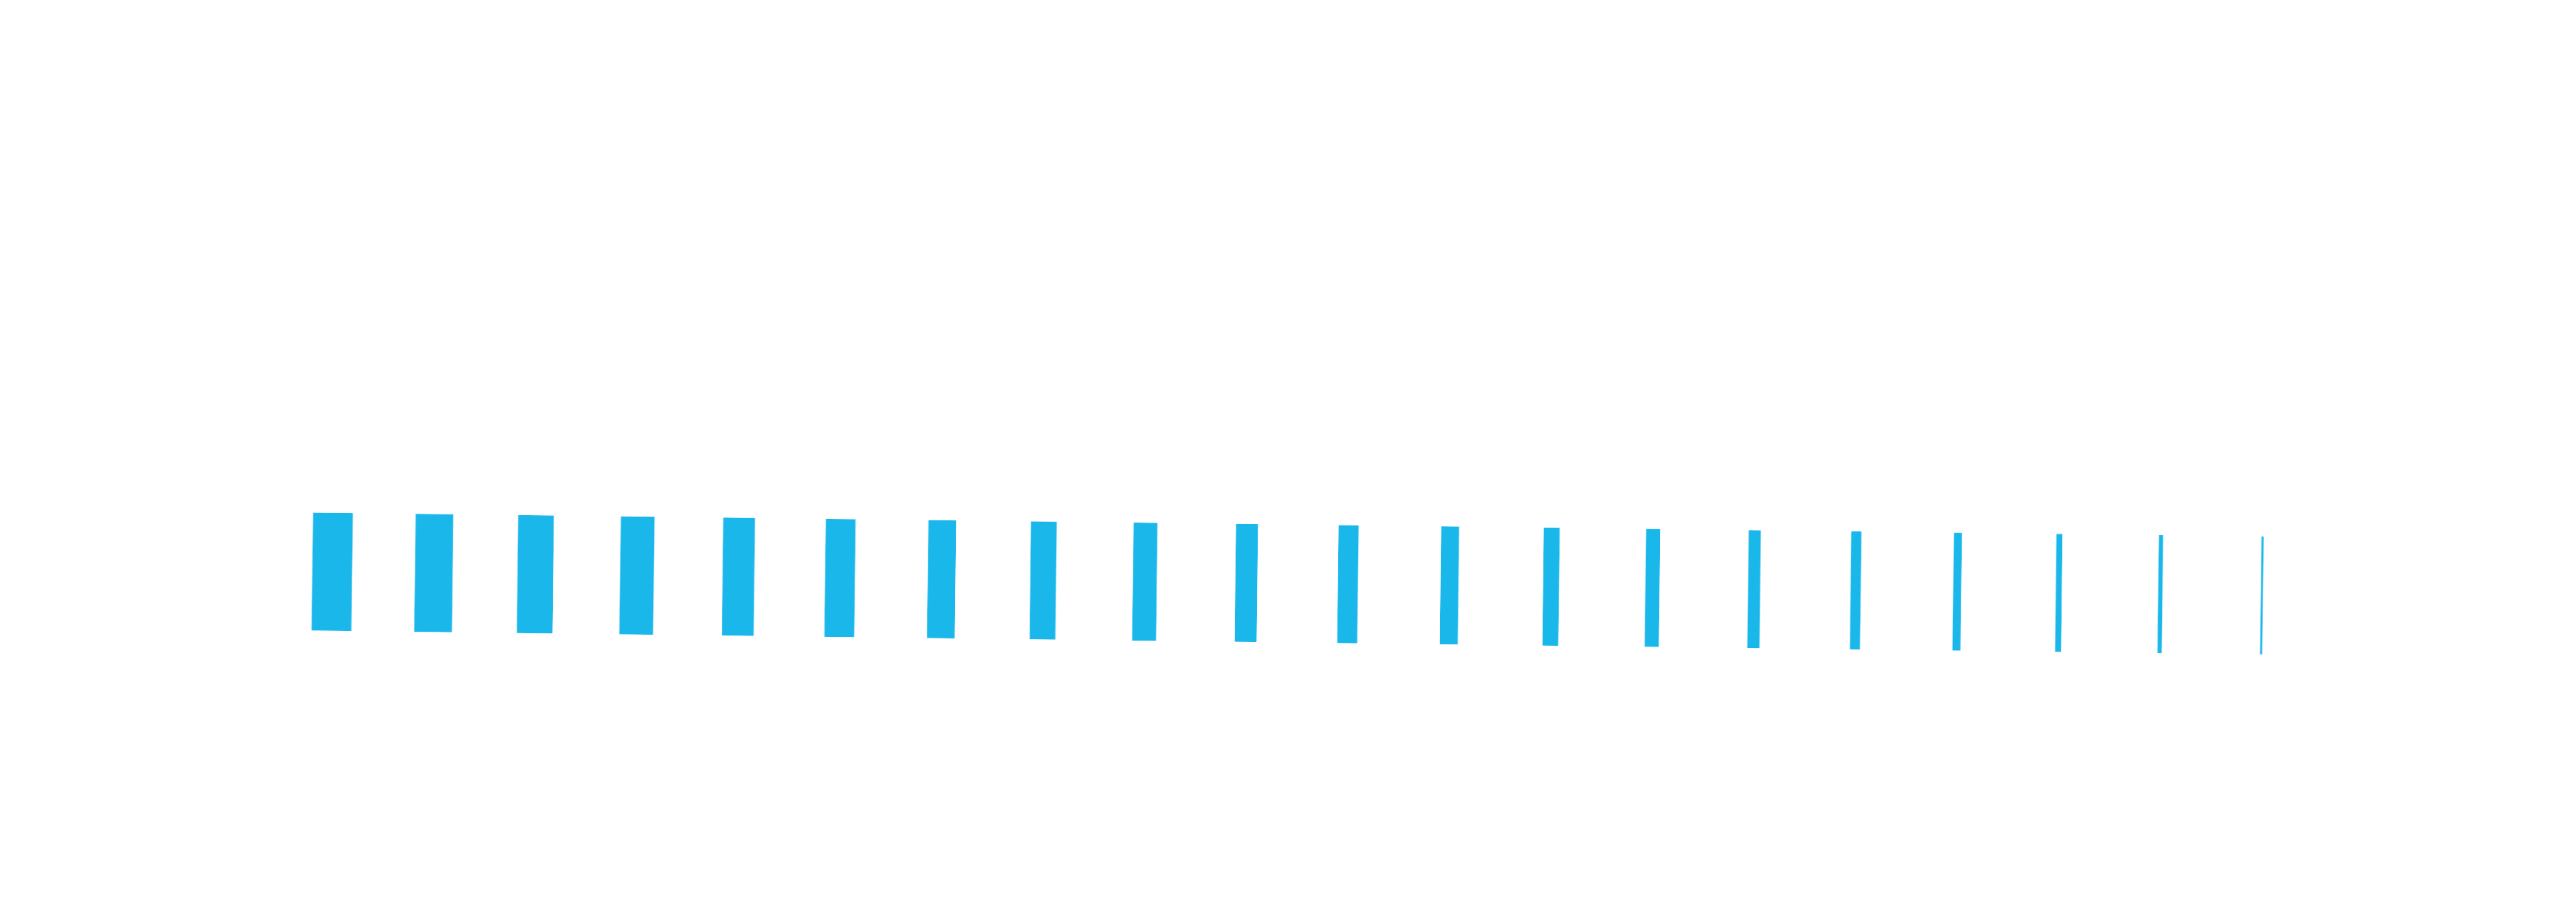 Celebrating 190 years emblem